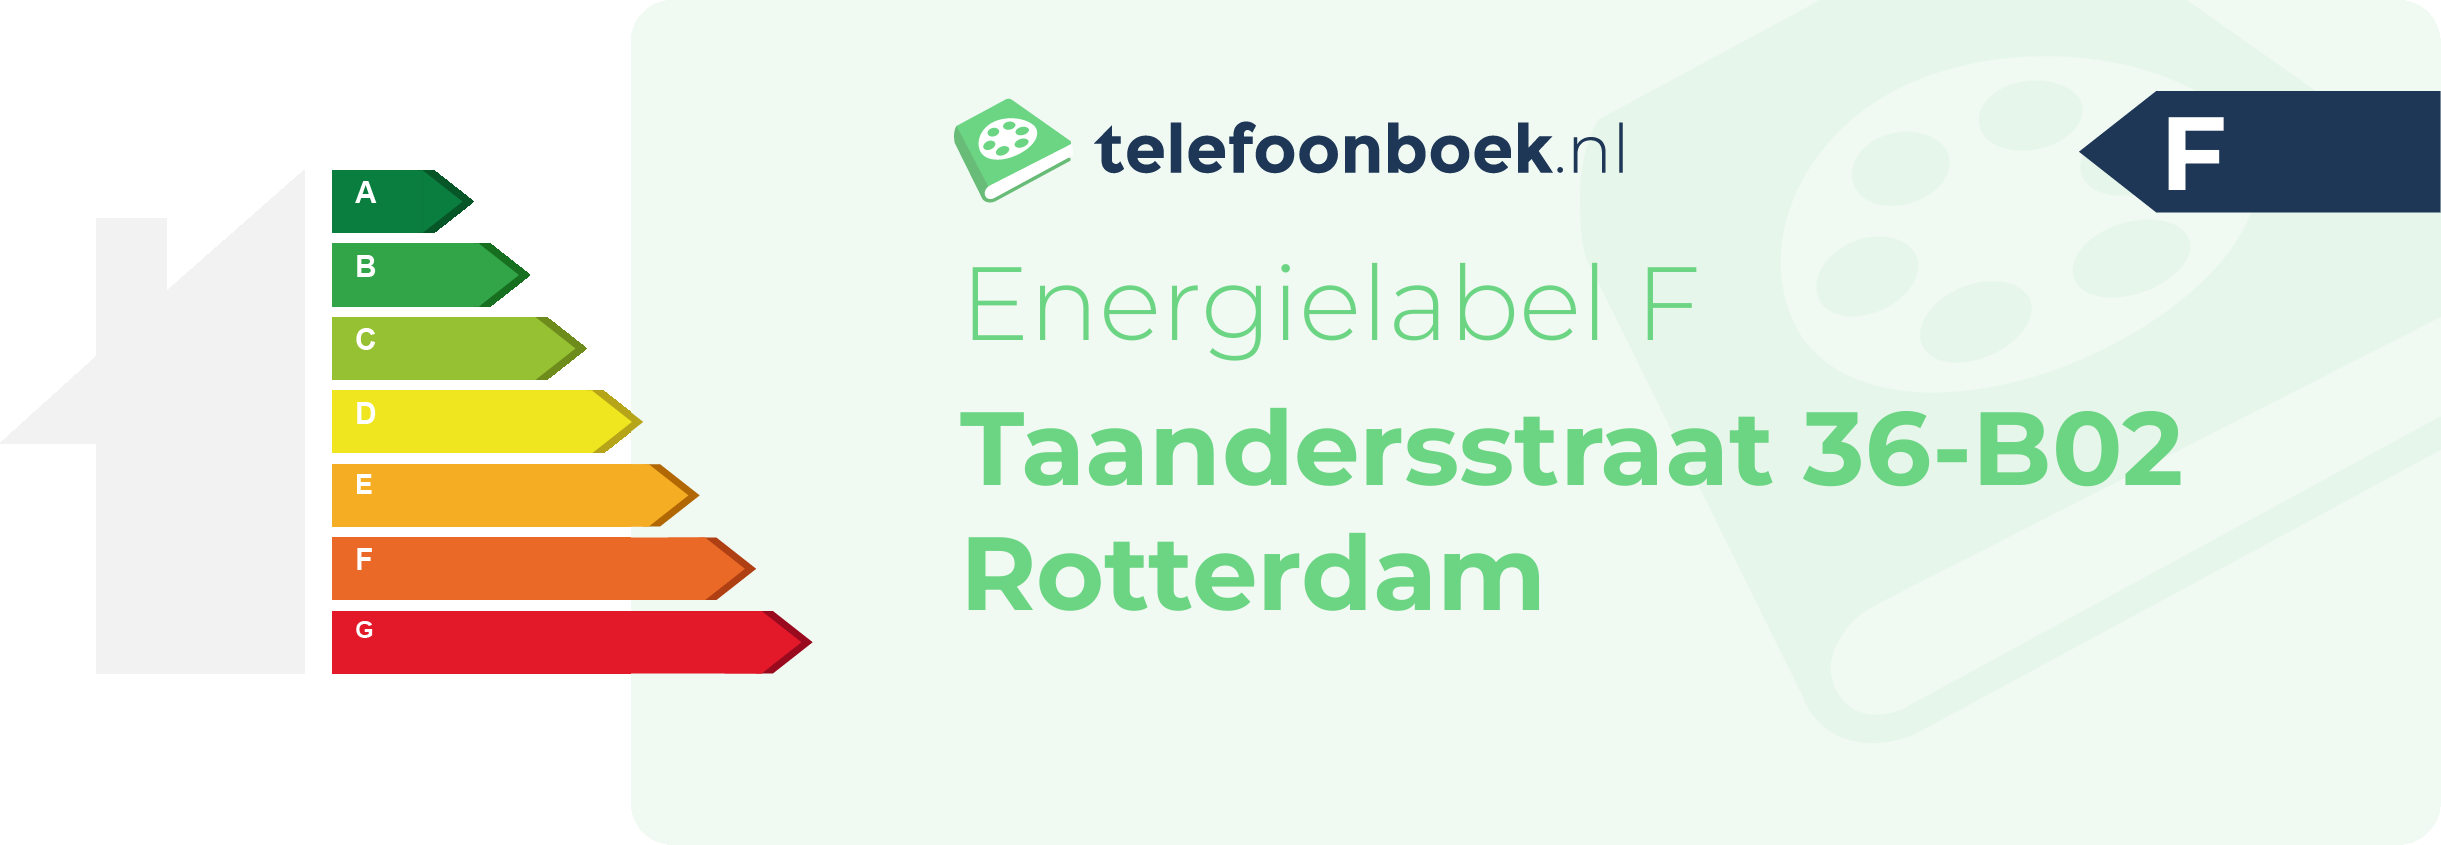 Energielabel Taandersstraat 36-B02 Rotterdam